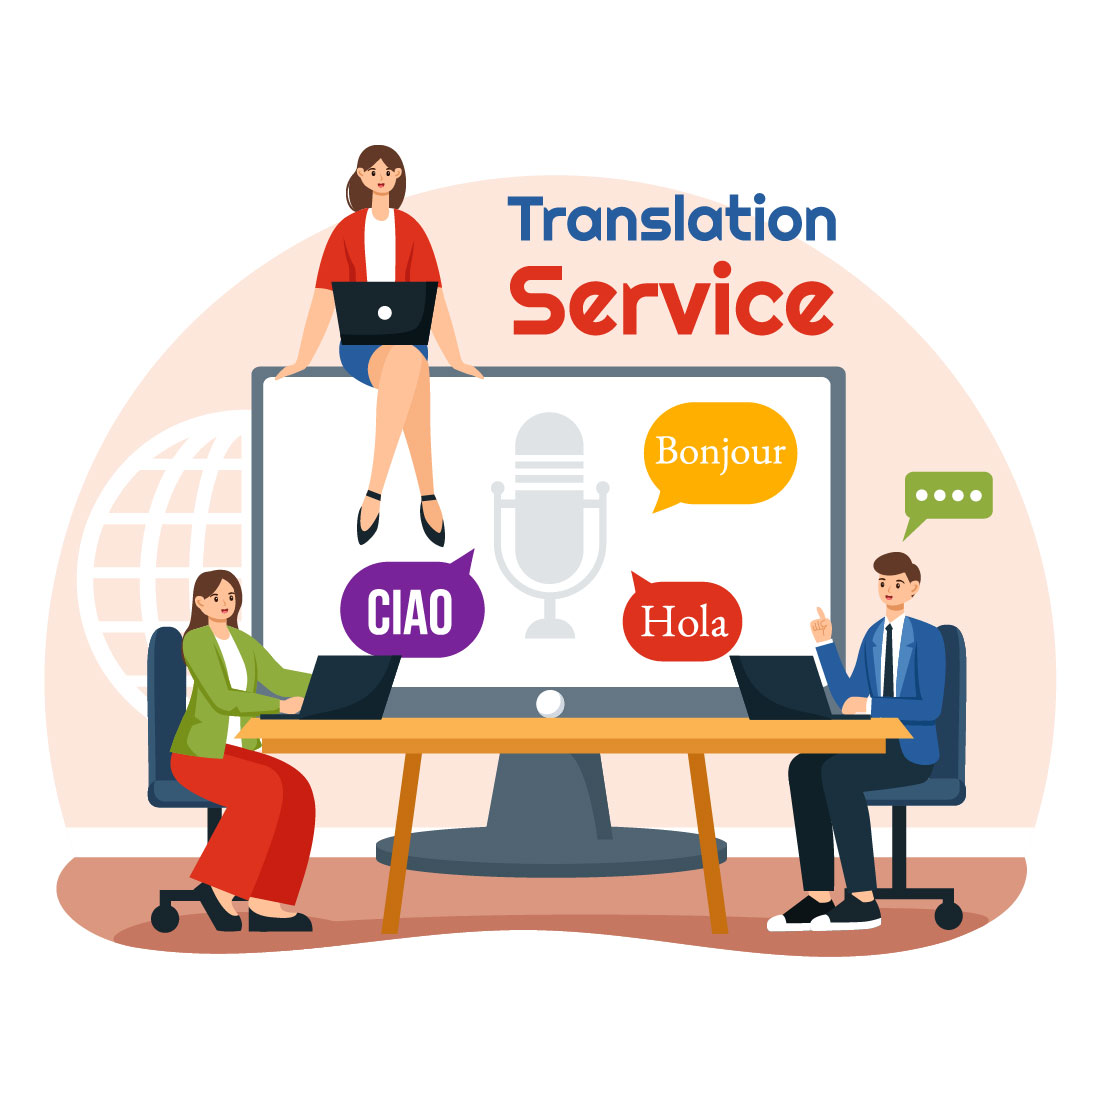 9 Translation Service Illustration preview image.